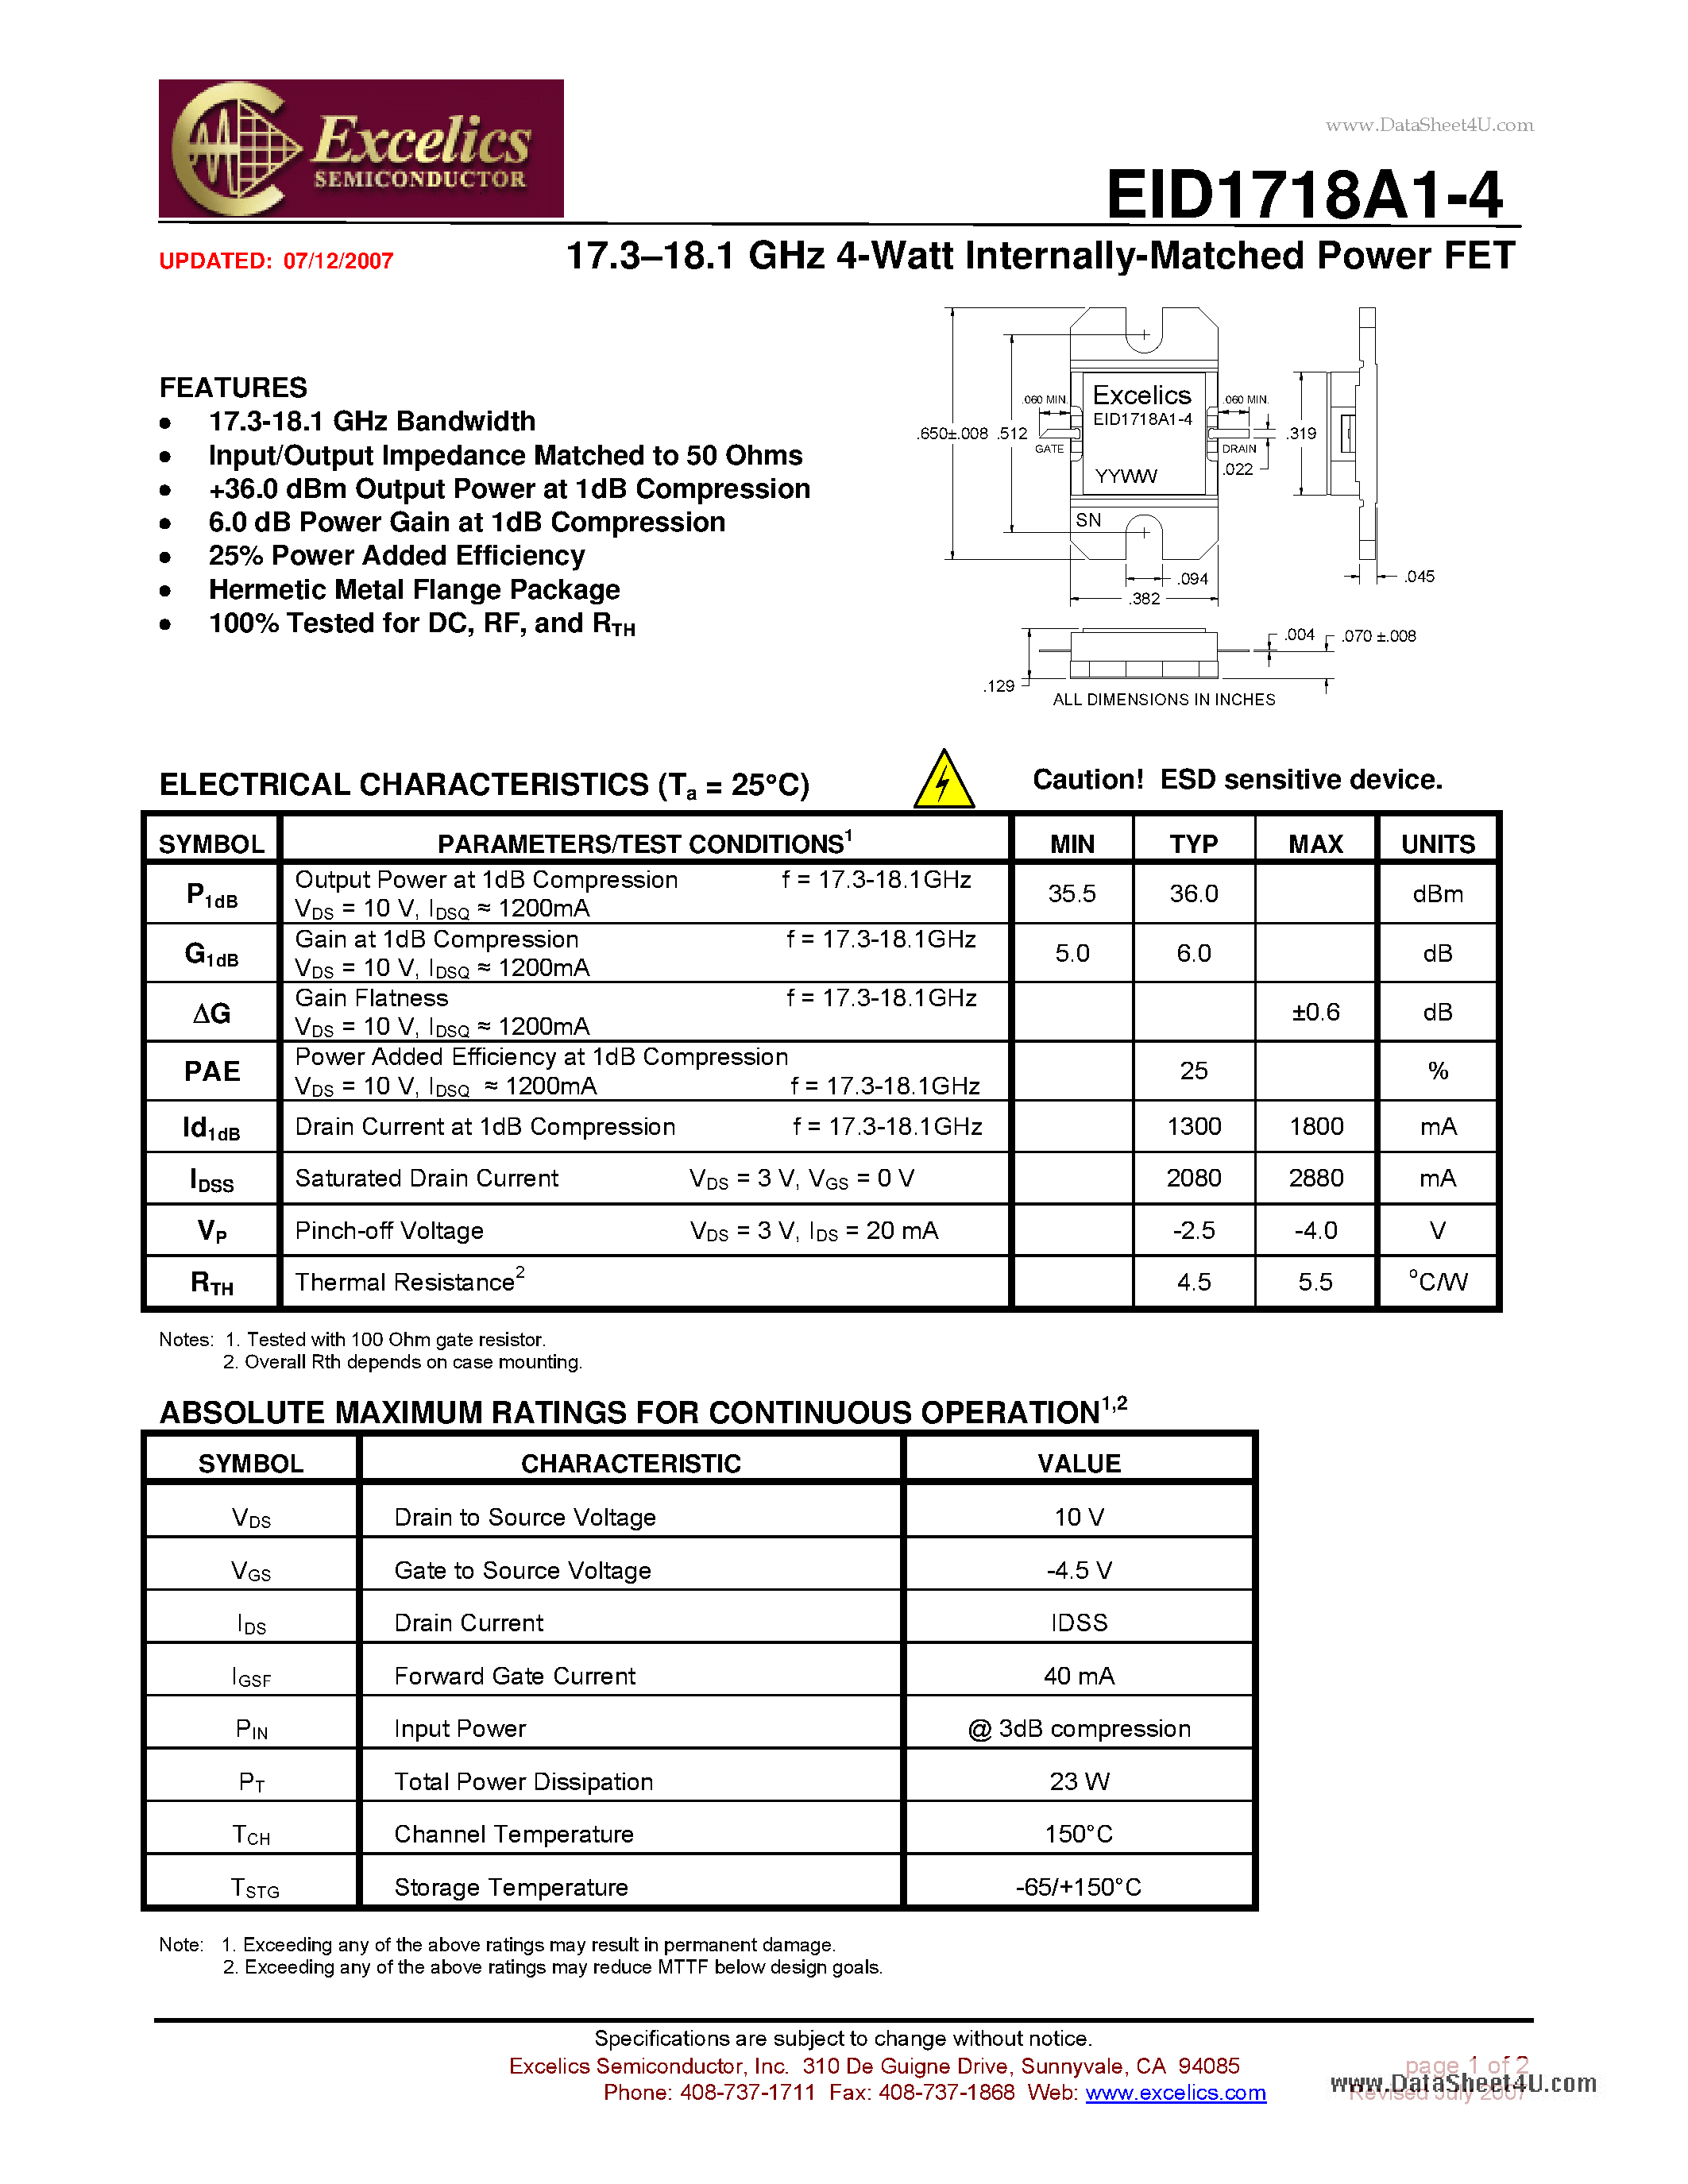 Даташит EID1718A1-4-17.3-18.1 GHz 4-Watt Internally-Matched Power FET страница 1